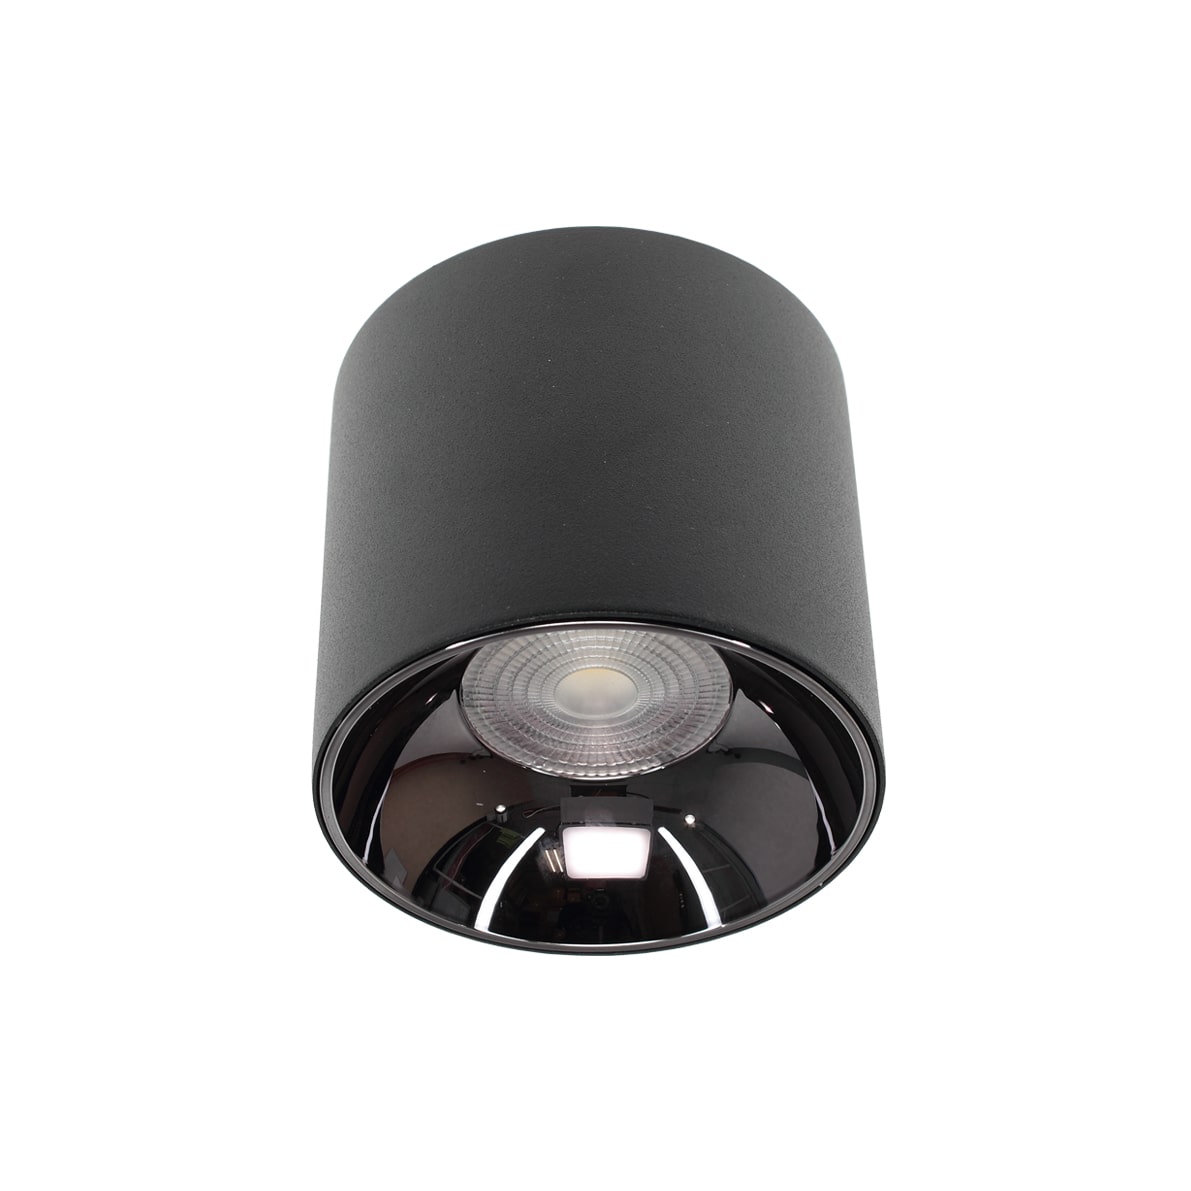 Светодиодные светильники Светодиодный светильник JH-MTD-Z15W B99 (15W, черный корпус, day white)